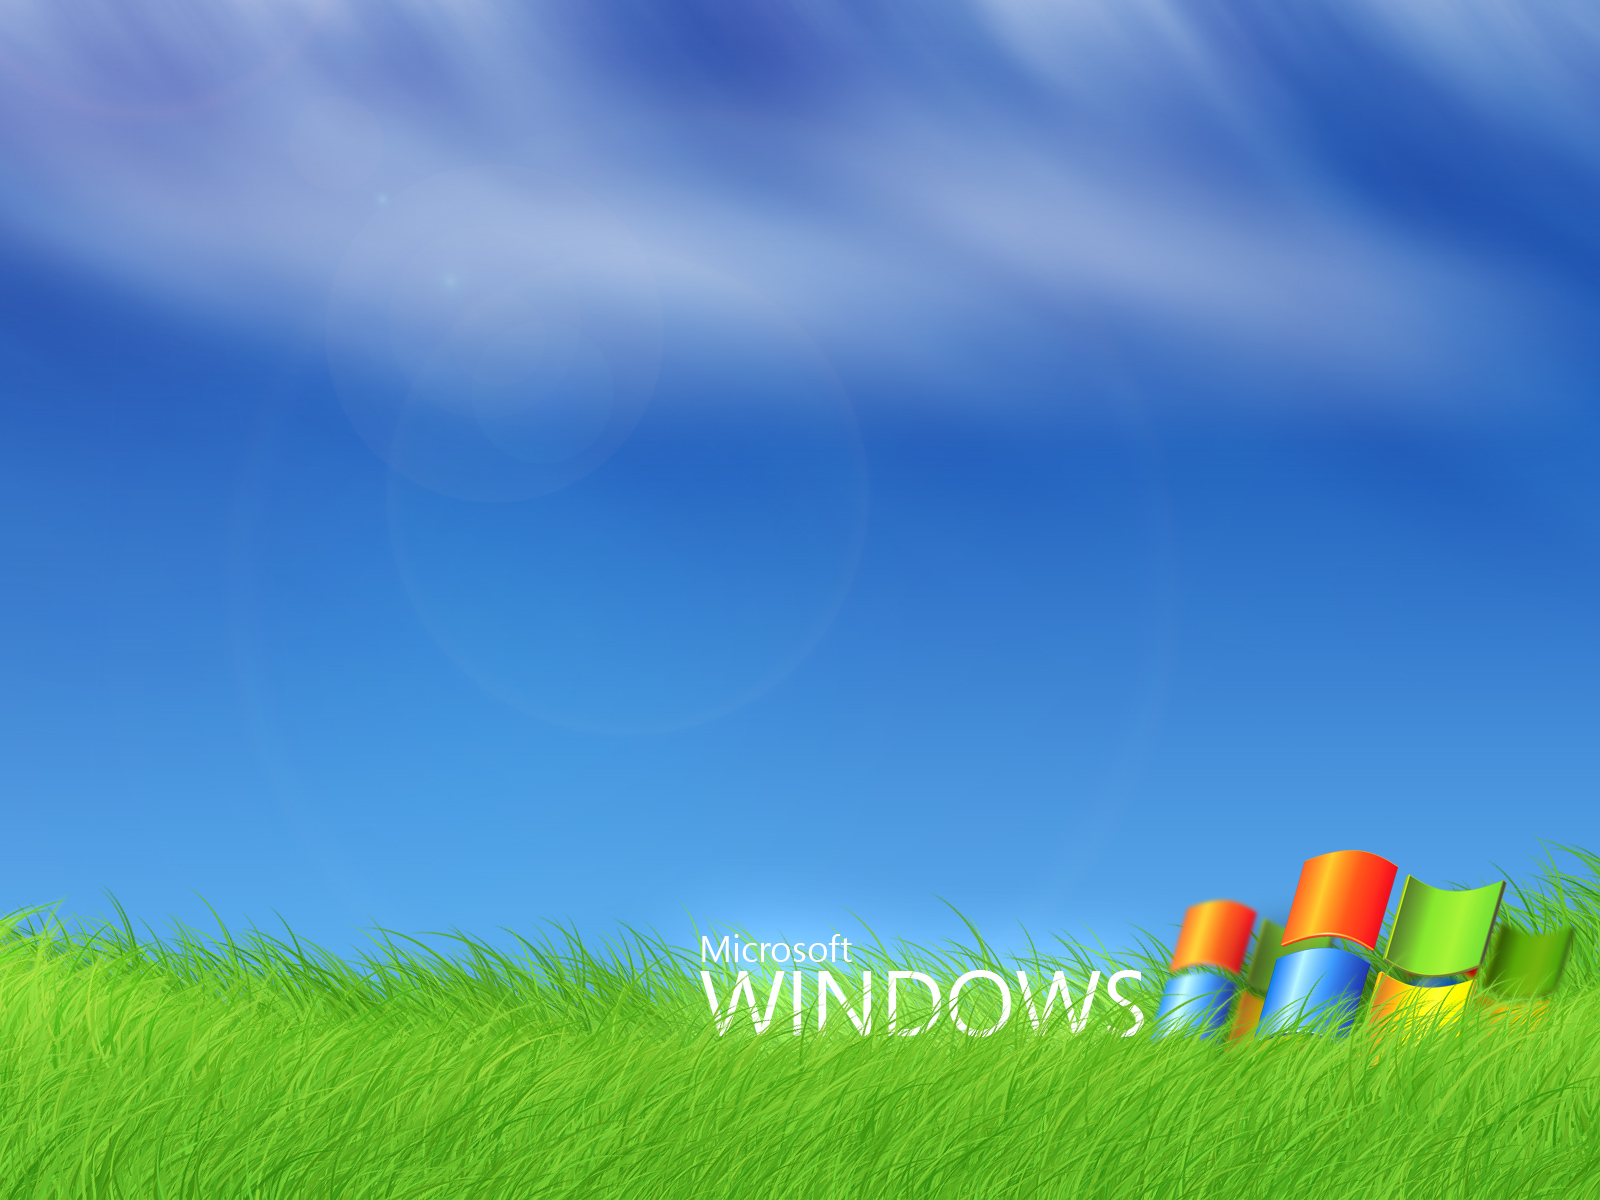 윈도우 배경 화면 무료 다운로드,자연 경관,하늘,목초지,잔디,목초지